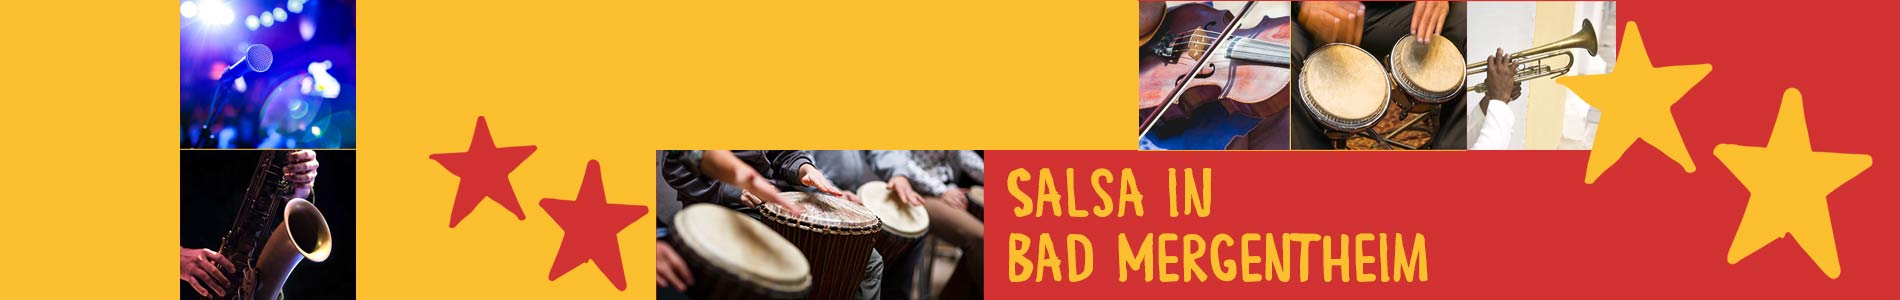 Salsa in Bad Mergentheim – Salsa lernen und tanzen, Tanzkurse, Partys, Veranstaltungen